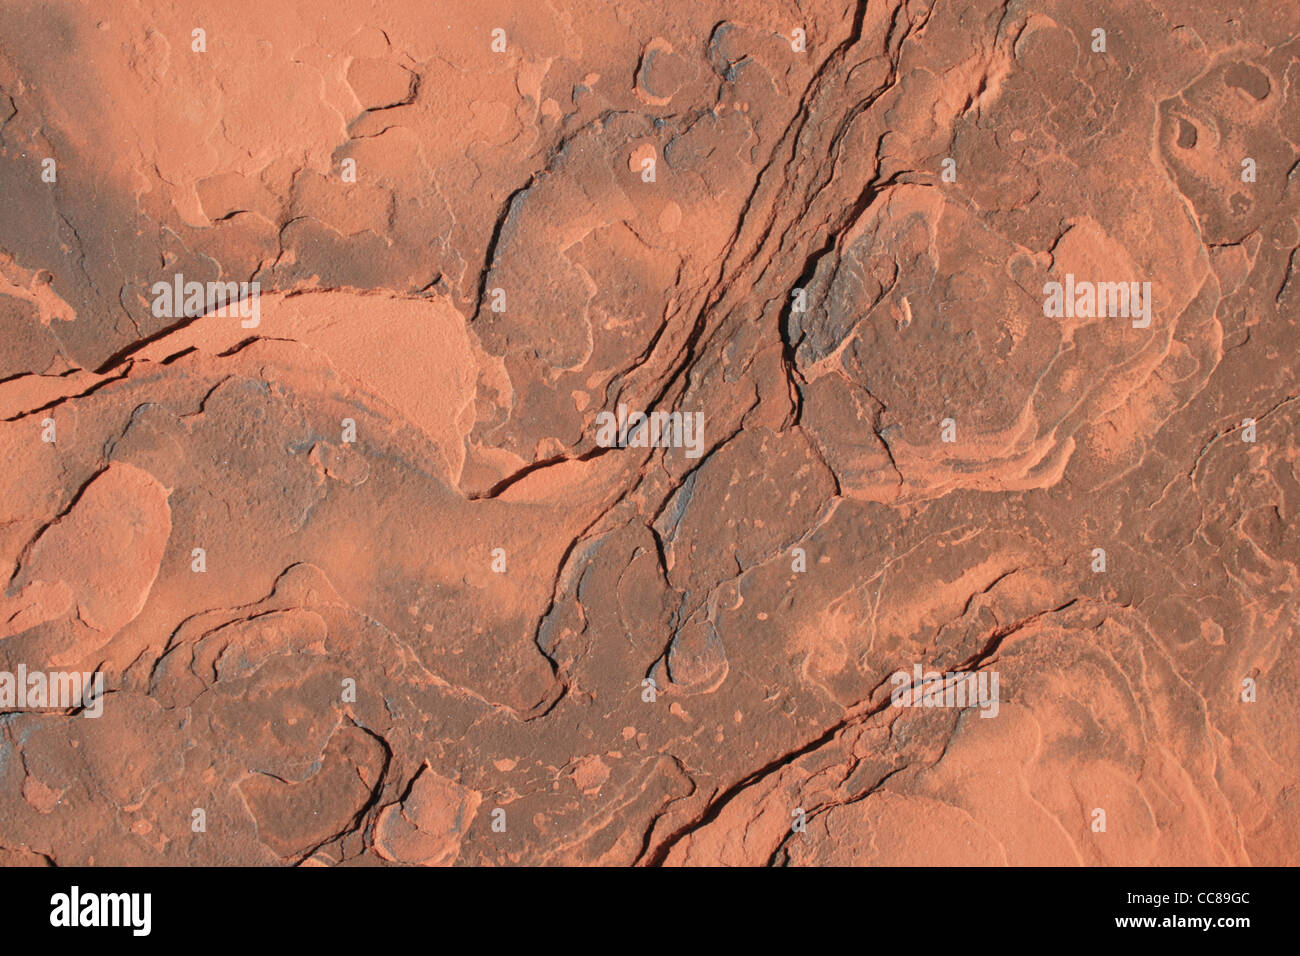 Arrière-plan de grès rouge écaillée avec surface texture intéressante Banque D'Images